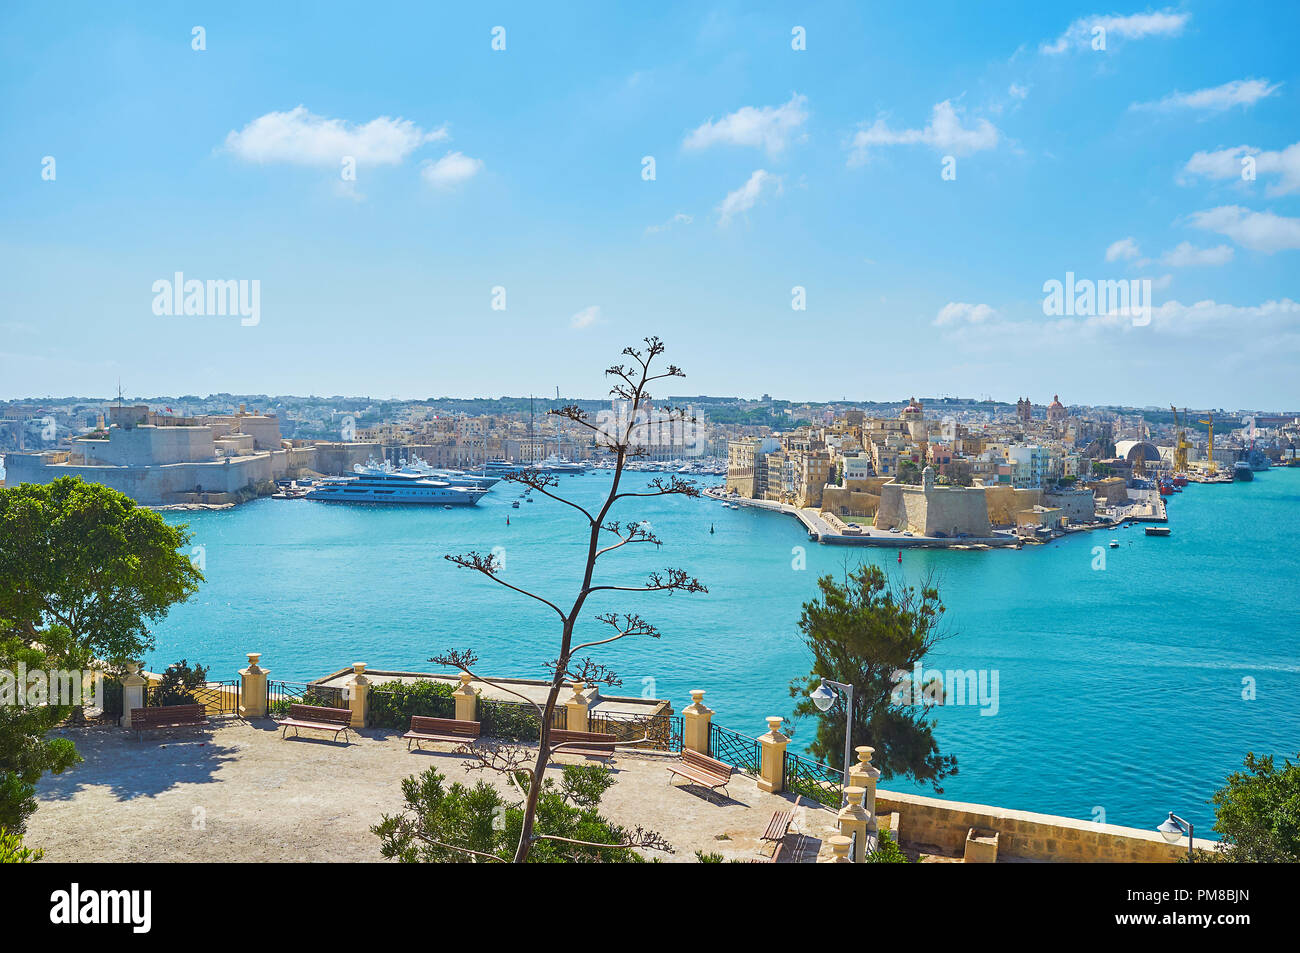 La vista sobre el Fuerte San Angelo Birgu (Vittoriosa), la fortaleza de Senglea (L-Isla), Valletta Grand Harbour y la terraza panorámica de Herbert Ganado Gar Foto de stock